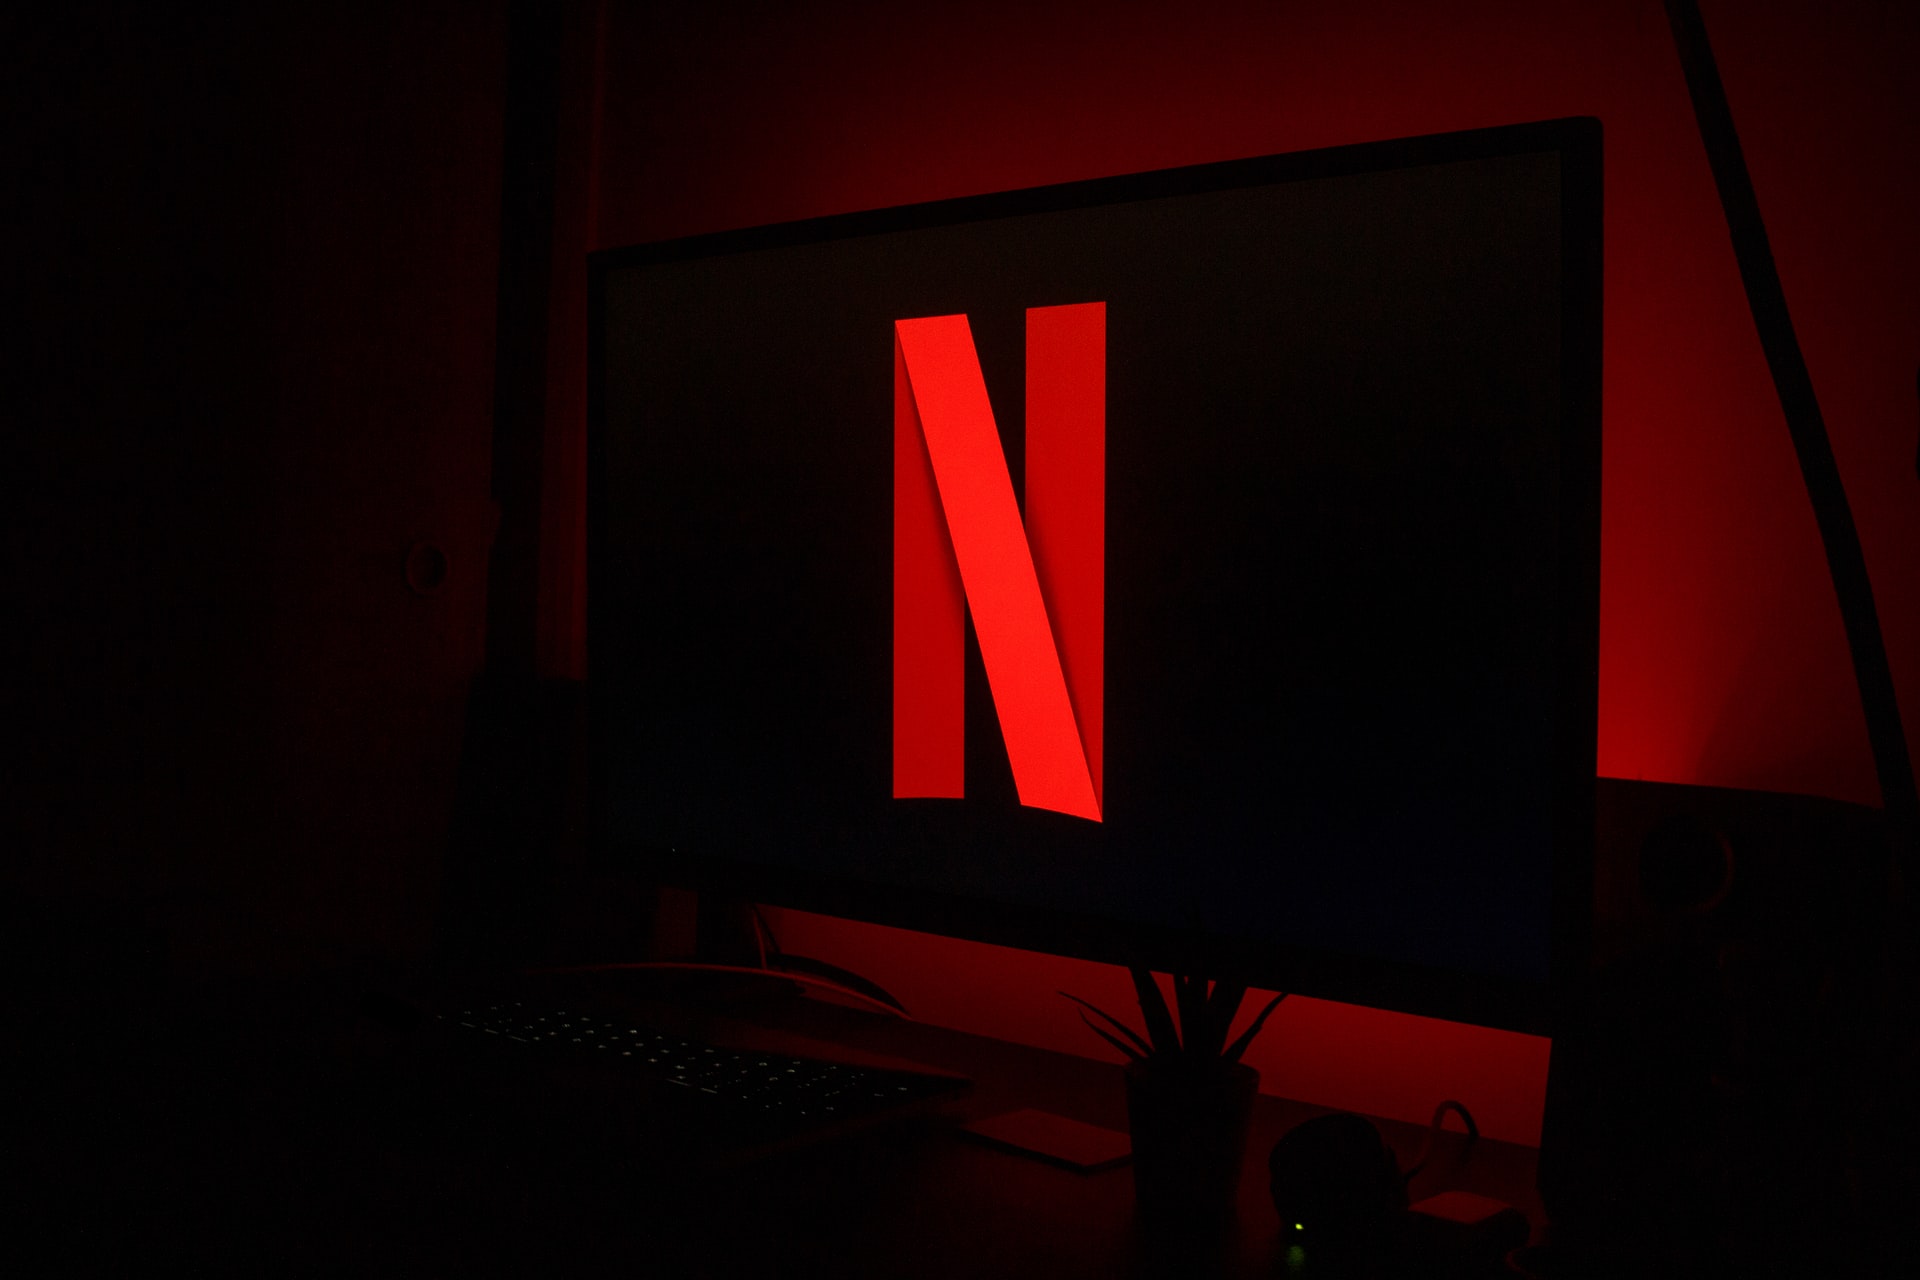 Netflix zam mı geldi 2022? Netflix abonelik ücreti ne kadar temel, standart, özel paket? İşte yeni fiyat, ücret listesi